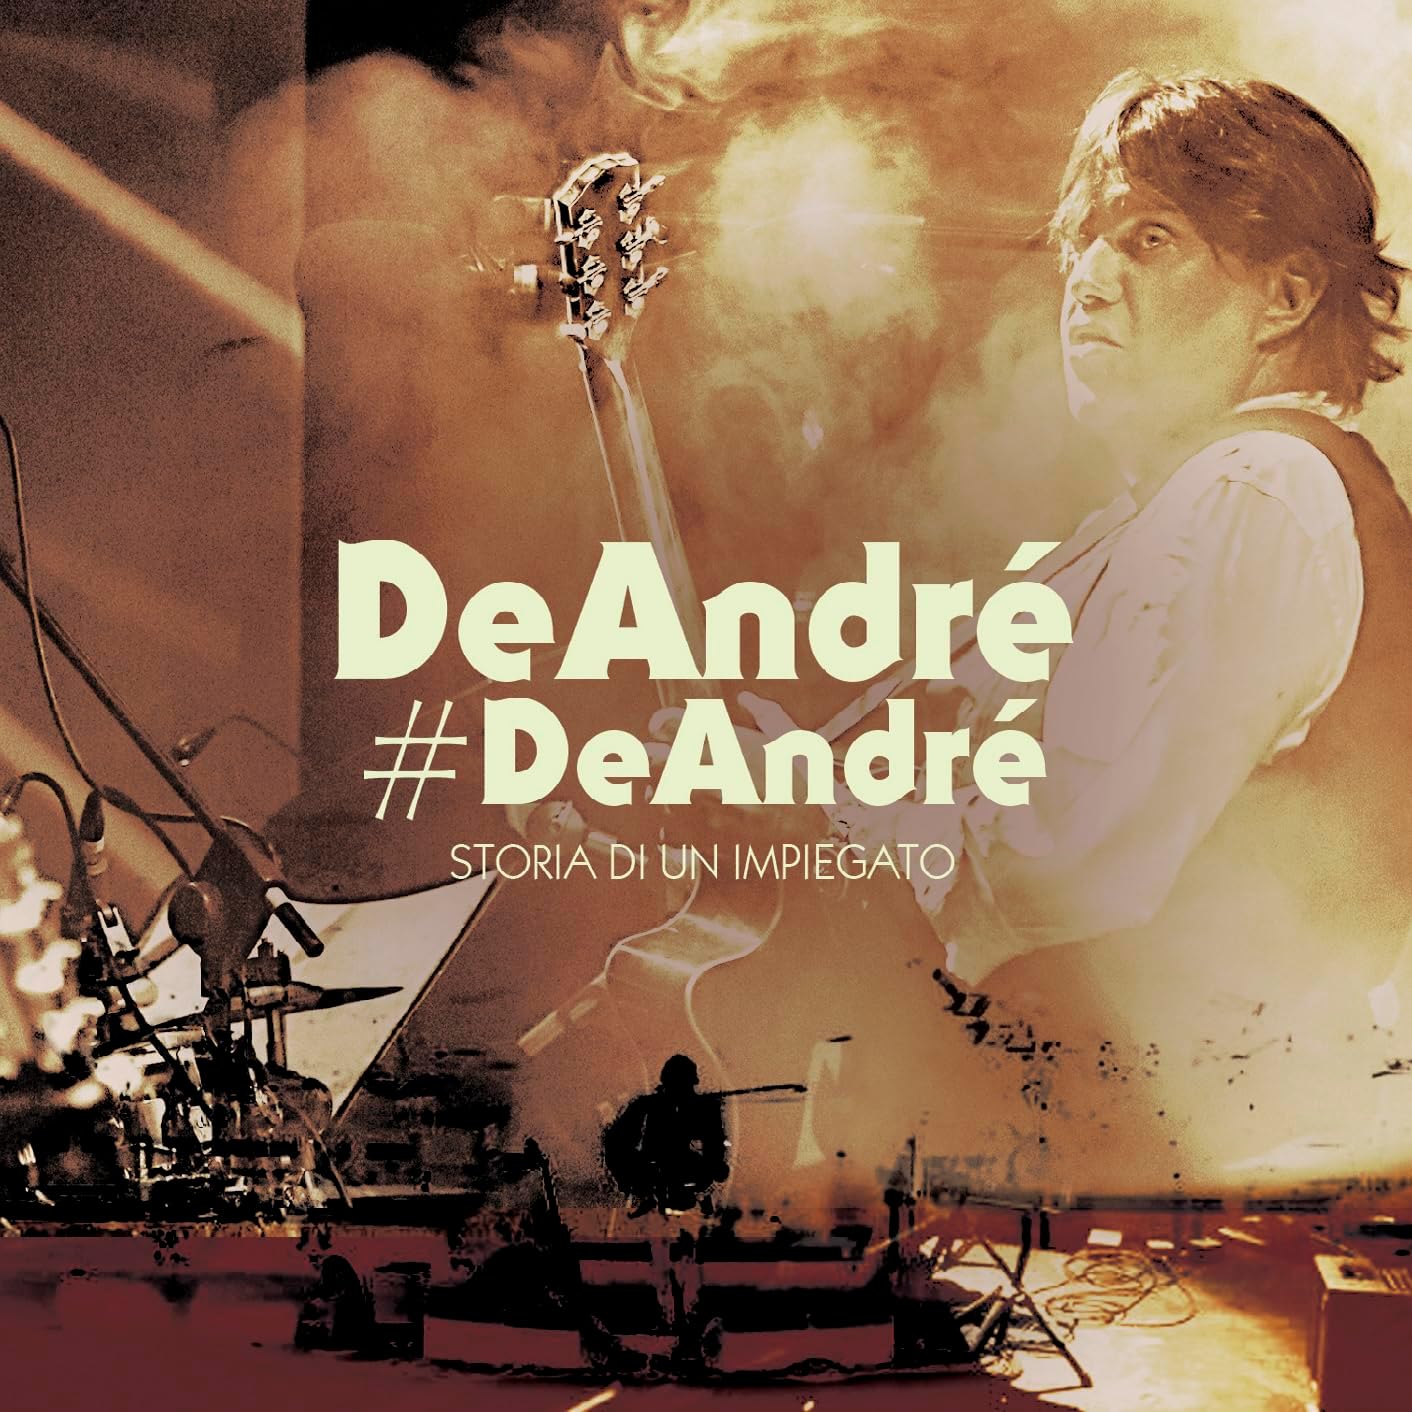 DeAndré#DeAndré - Storia di un impiegato (CD)